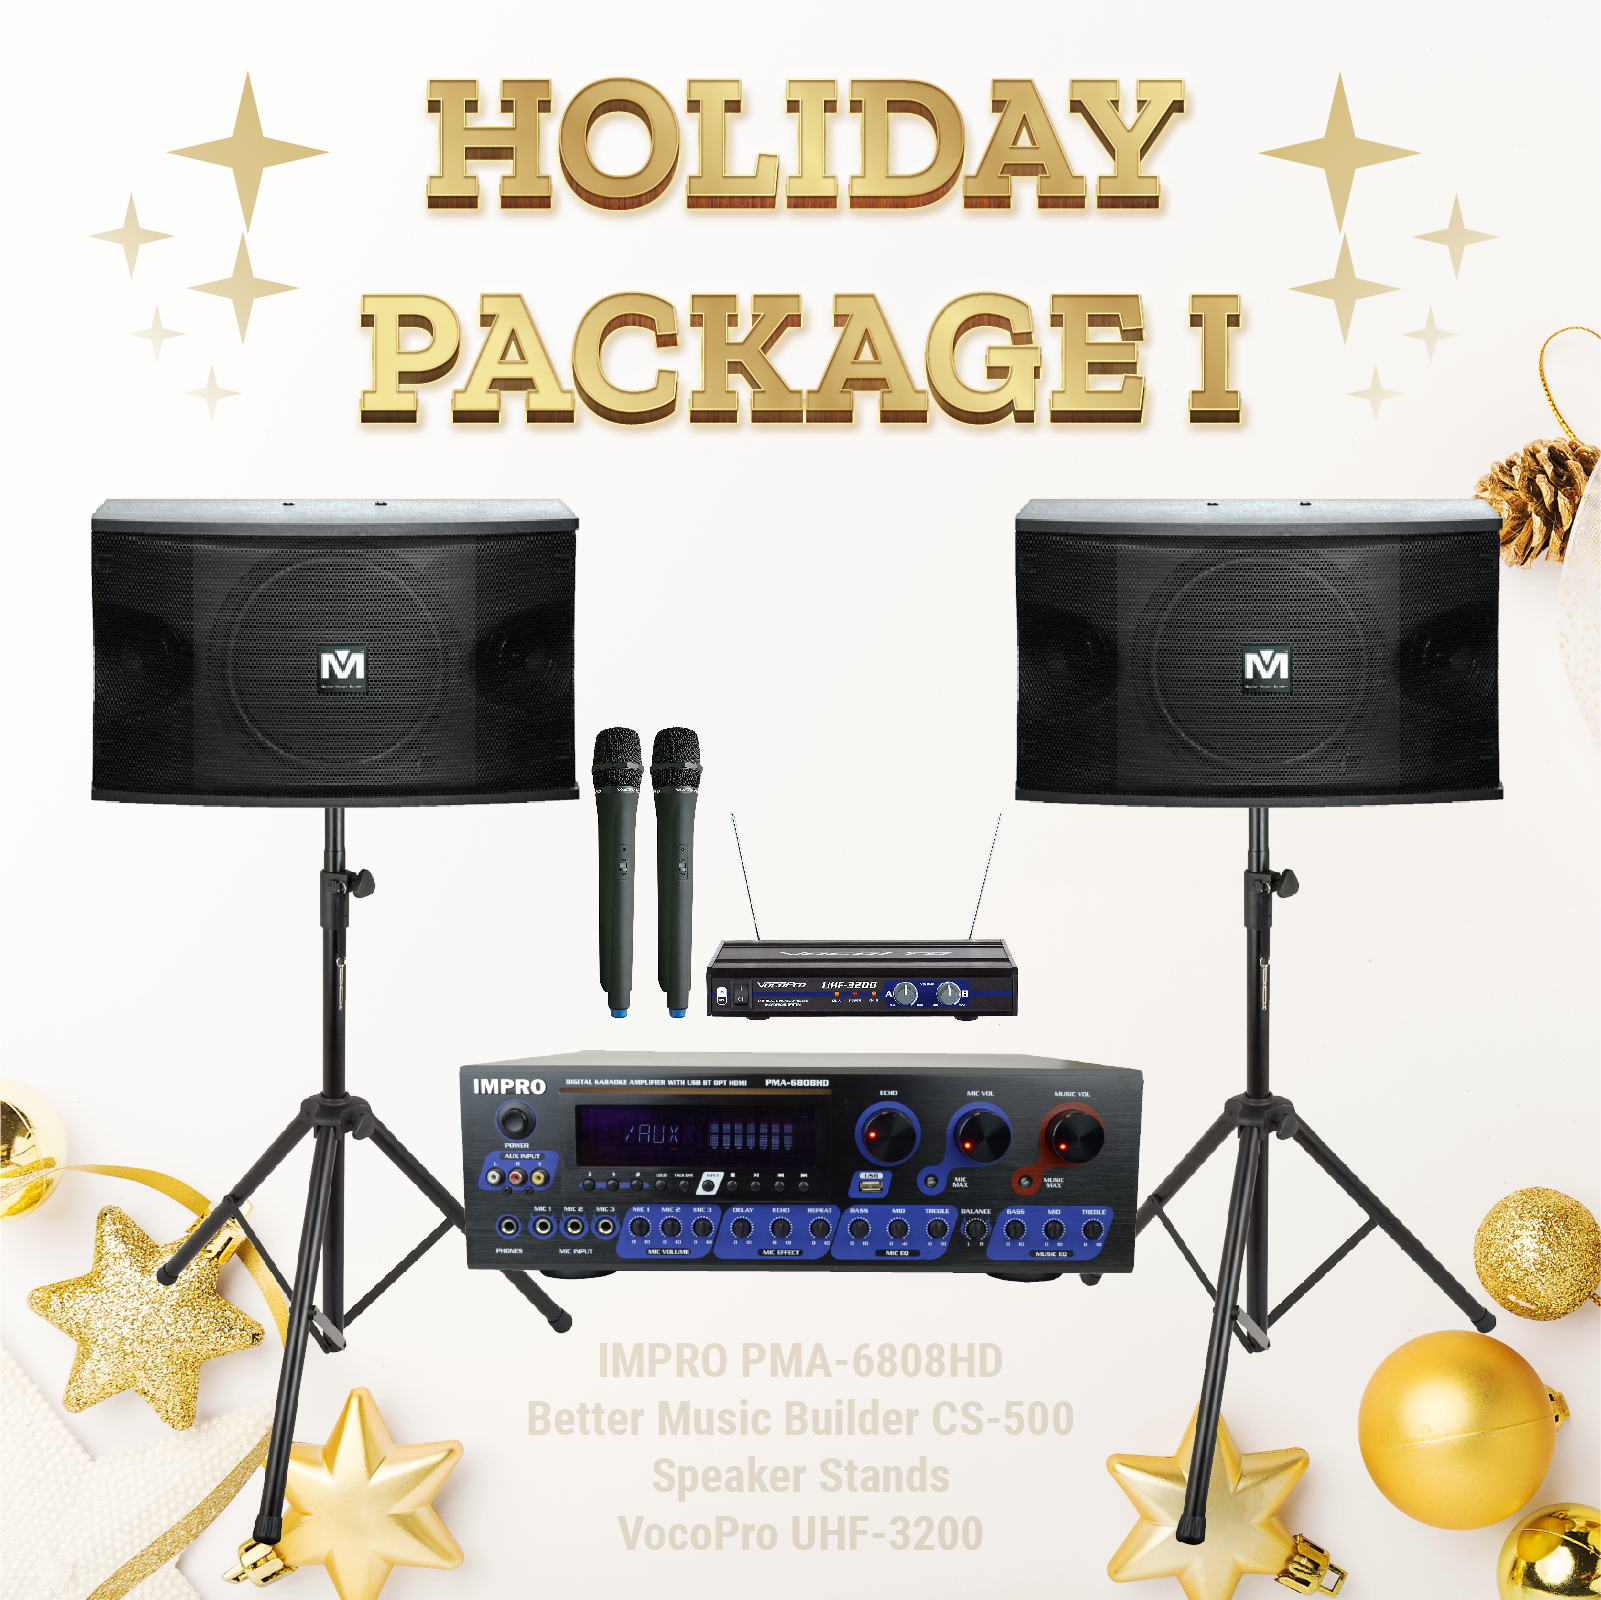 Gói kỳ nghỉ #01: ImPro PMA-6808HD + Chân đế + BetterMusicBuilder CS-500 + Hệ thống micrô VocoPro